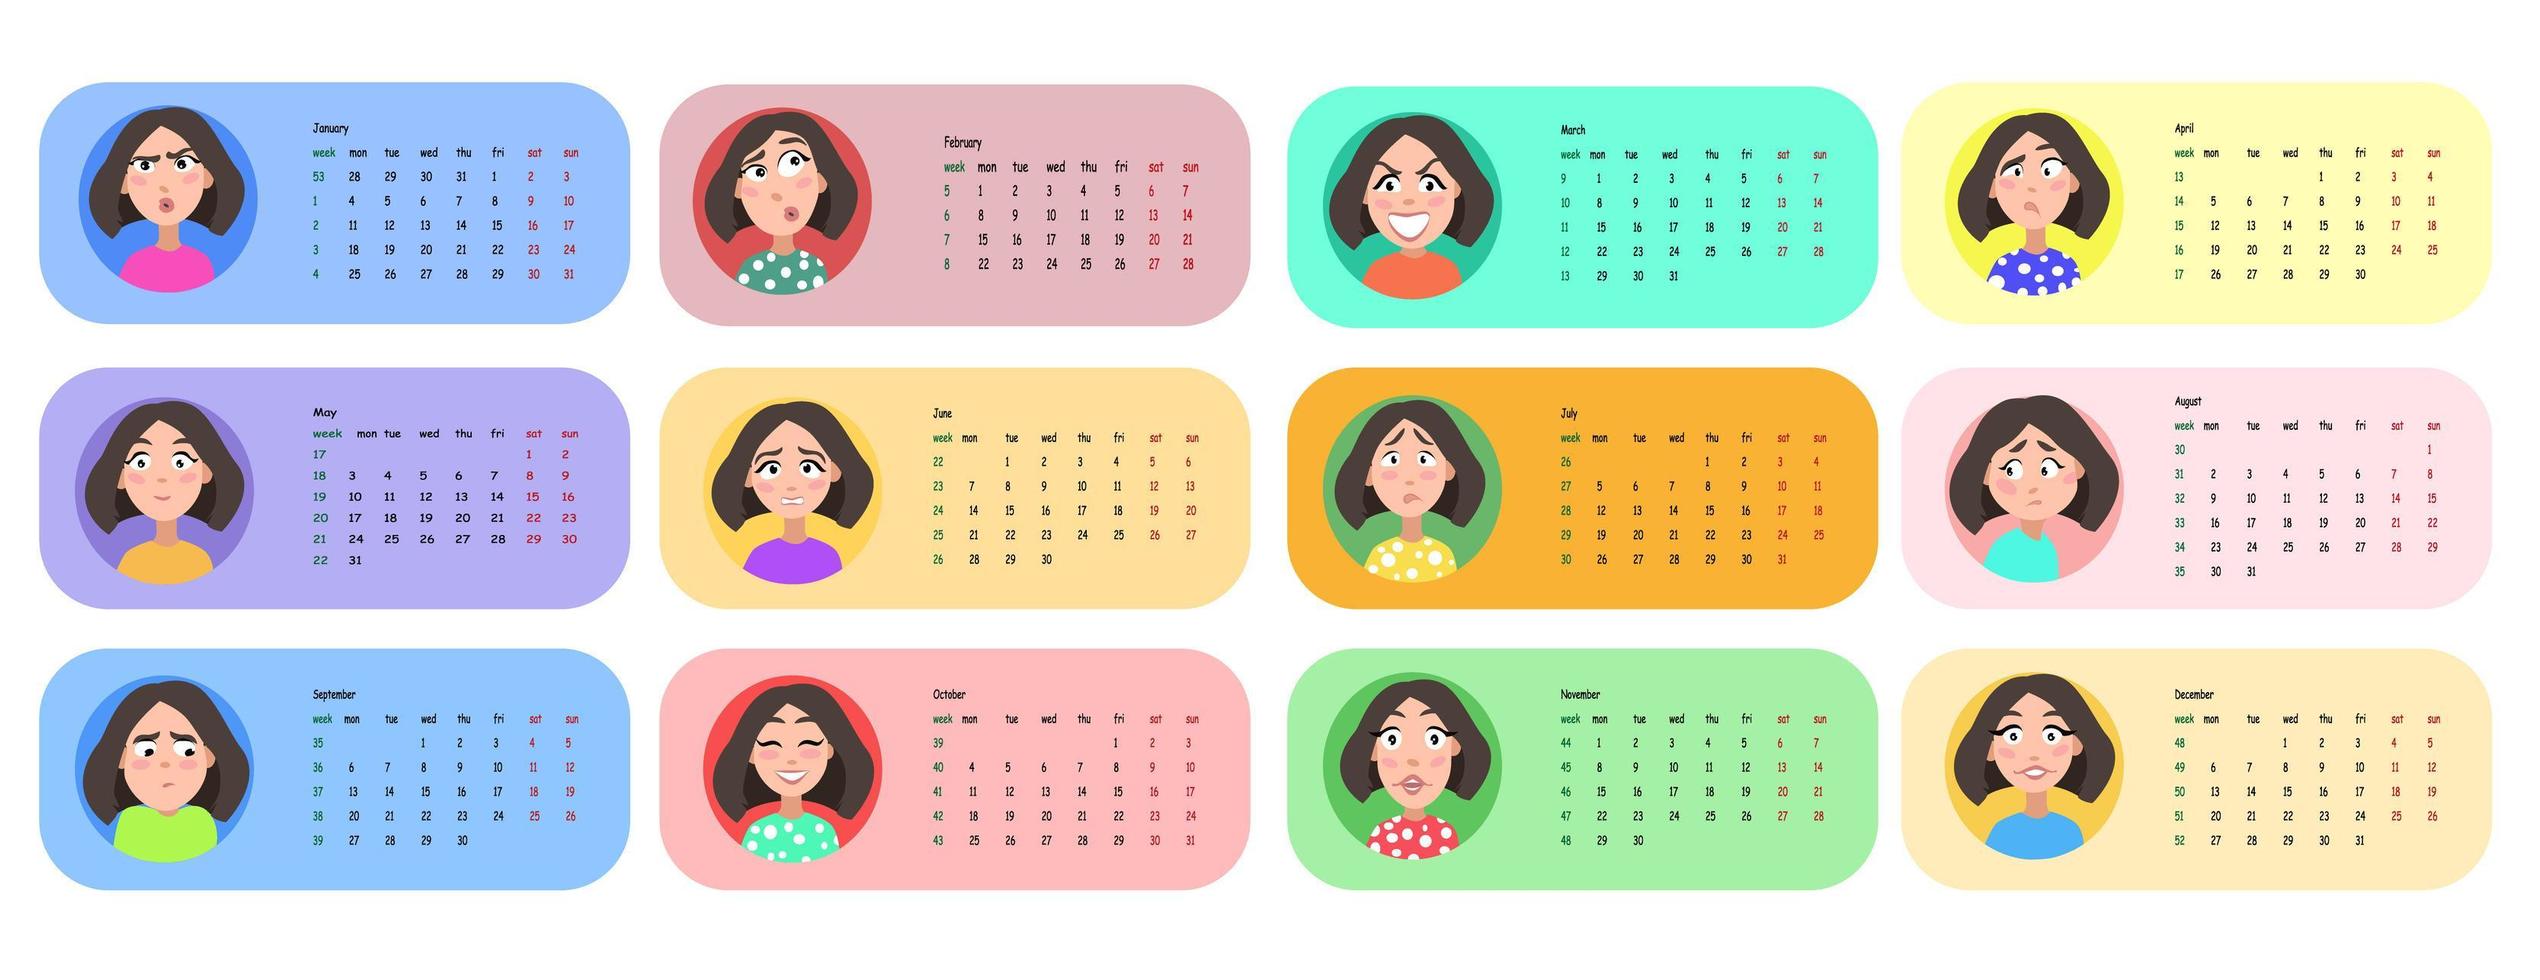 vrouwelijk gebruikersprofiel. kalender voor 2021 voor 12 maanden. vector